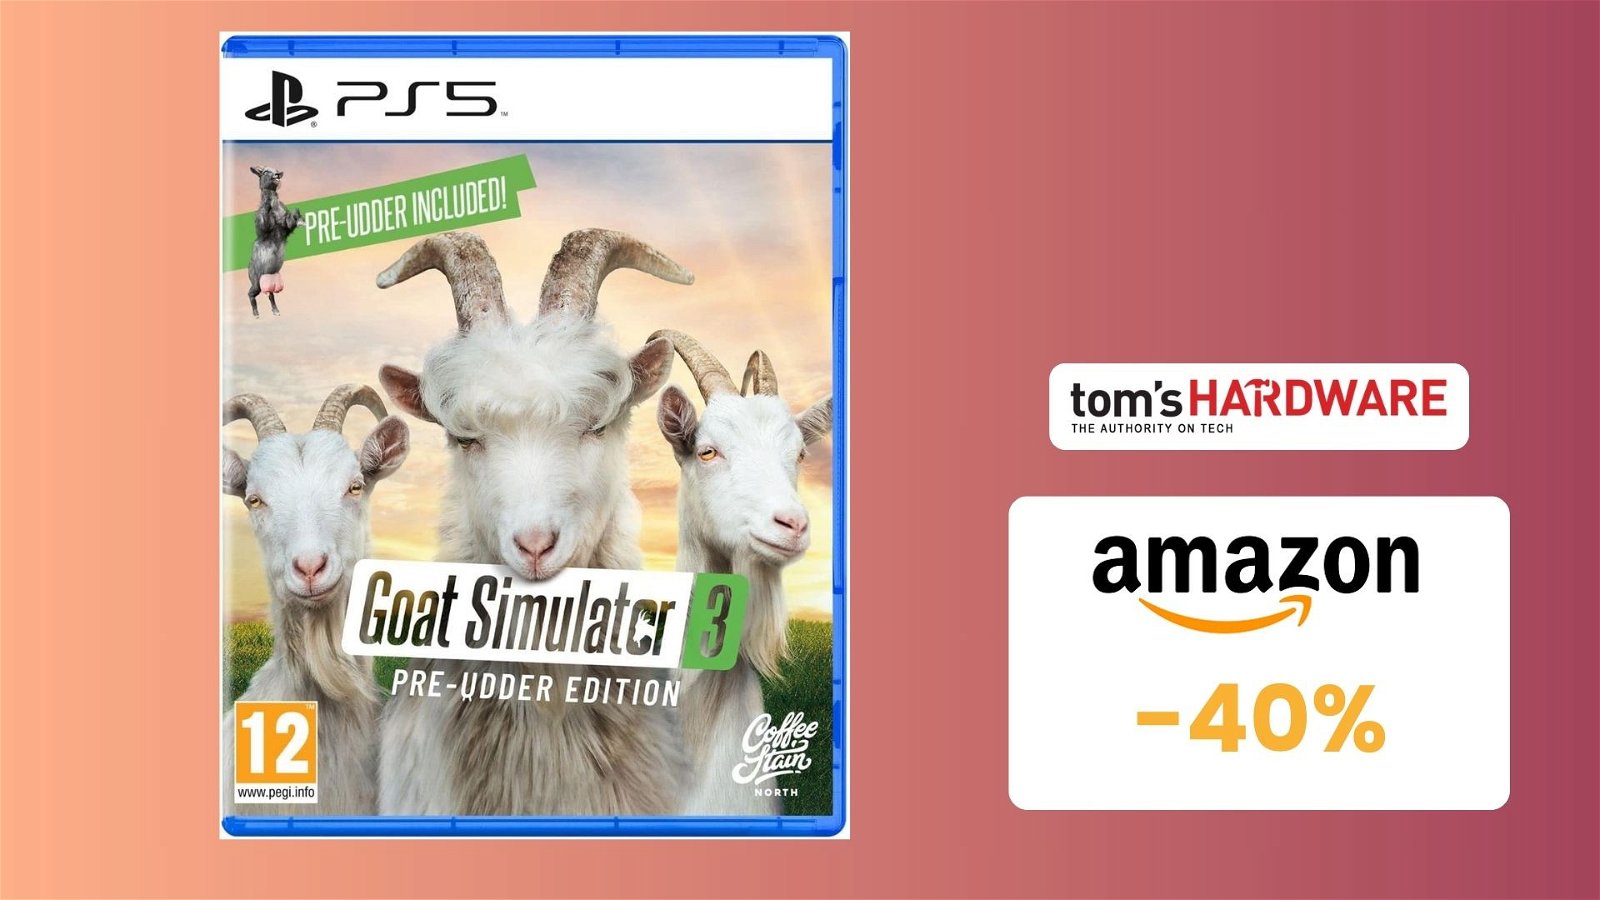 Immagine di Prezzo TOP! Goat Simulator 3 Pre-Udder Edition per PS5 a 18€! -40%!